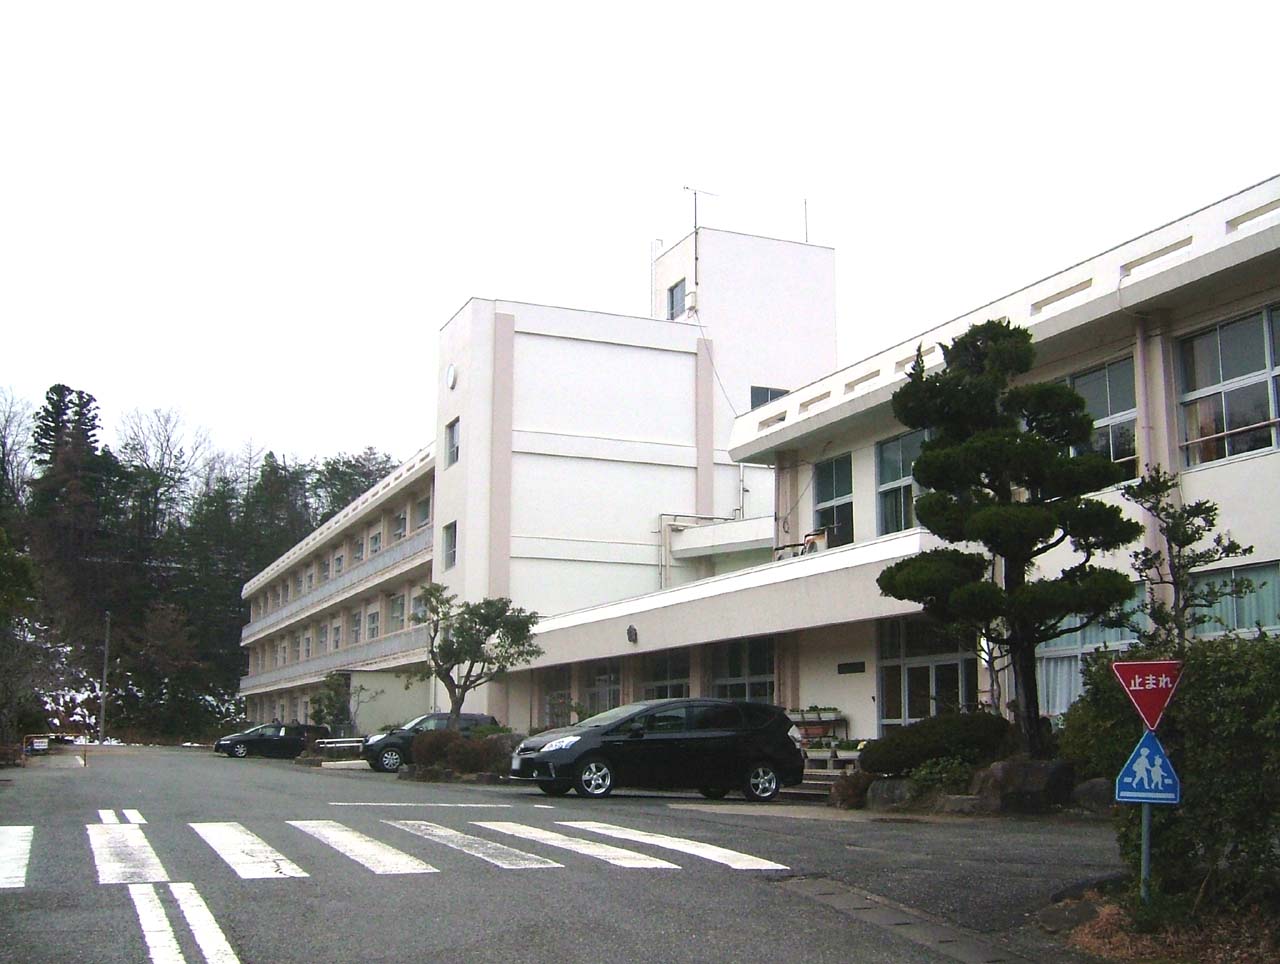 Primary school. Toyooka City Gosho to elementary school (elementary school) 715m